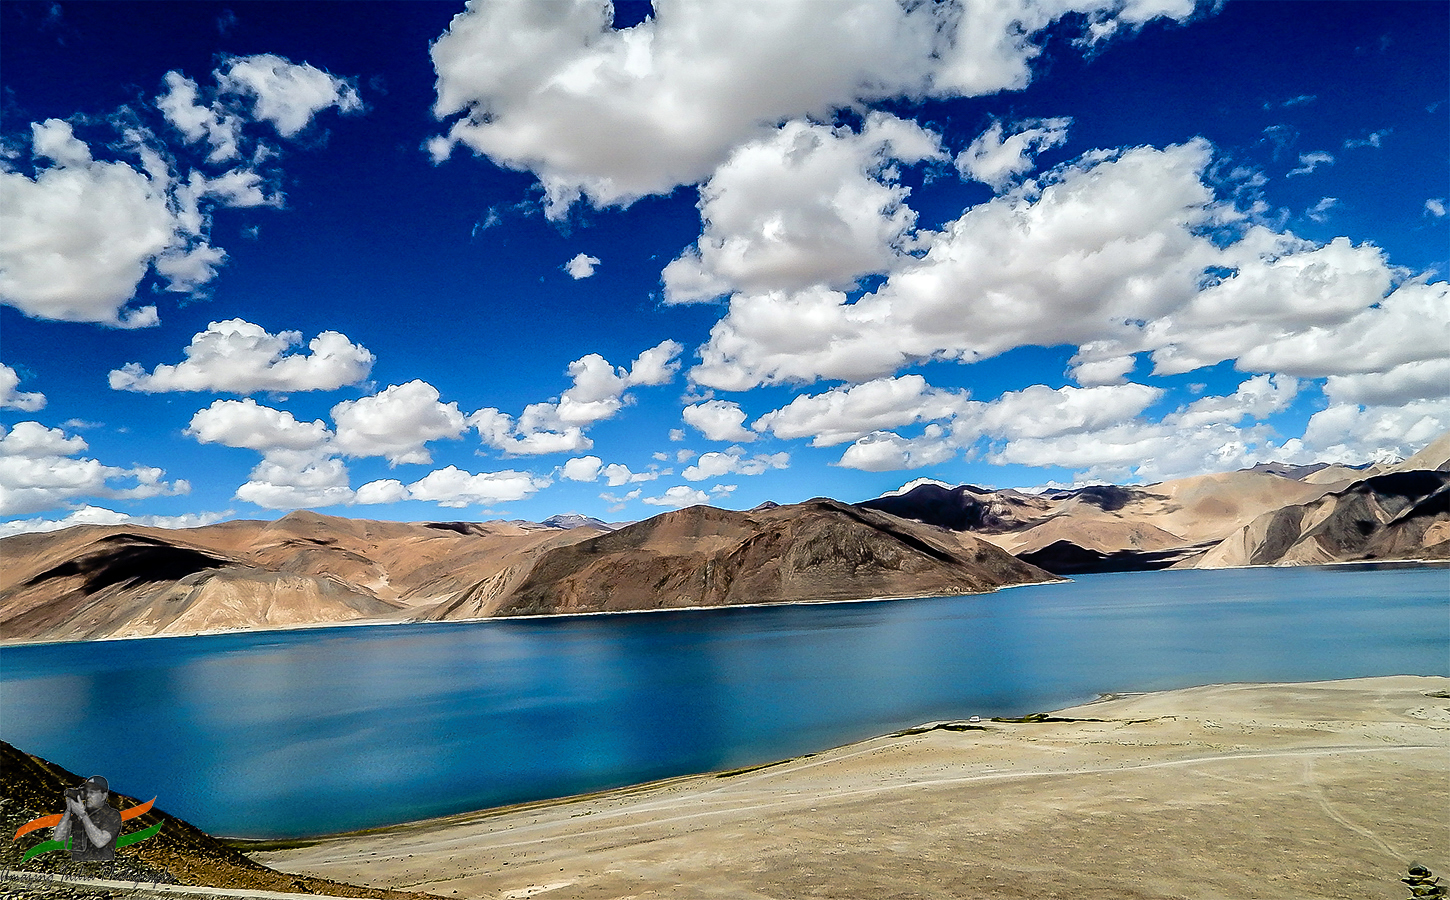 Beautiful-Ladakh-Scenery | Thomas Cook India Travel Blog